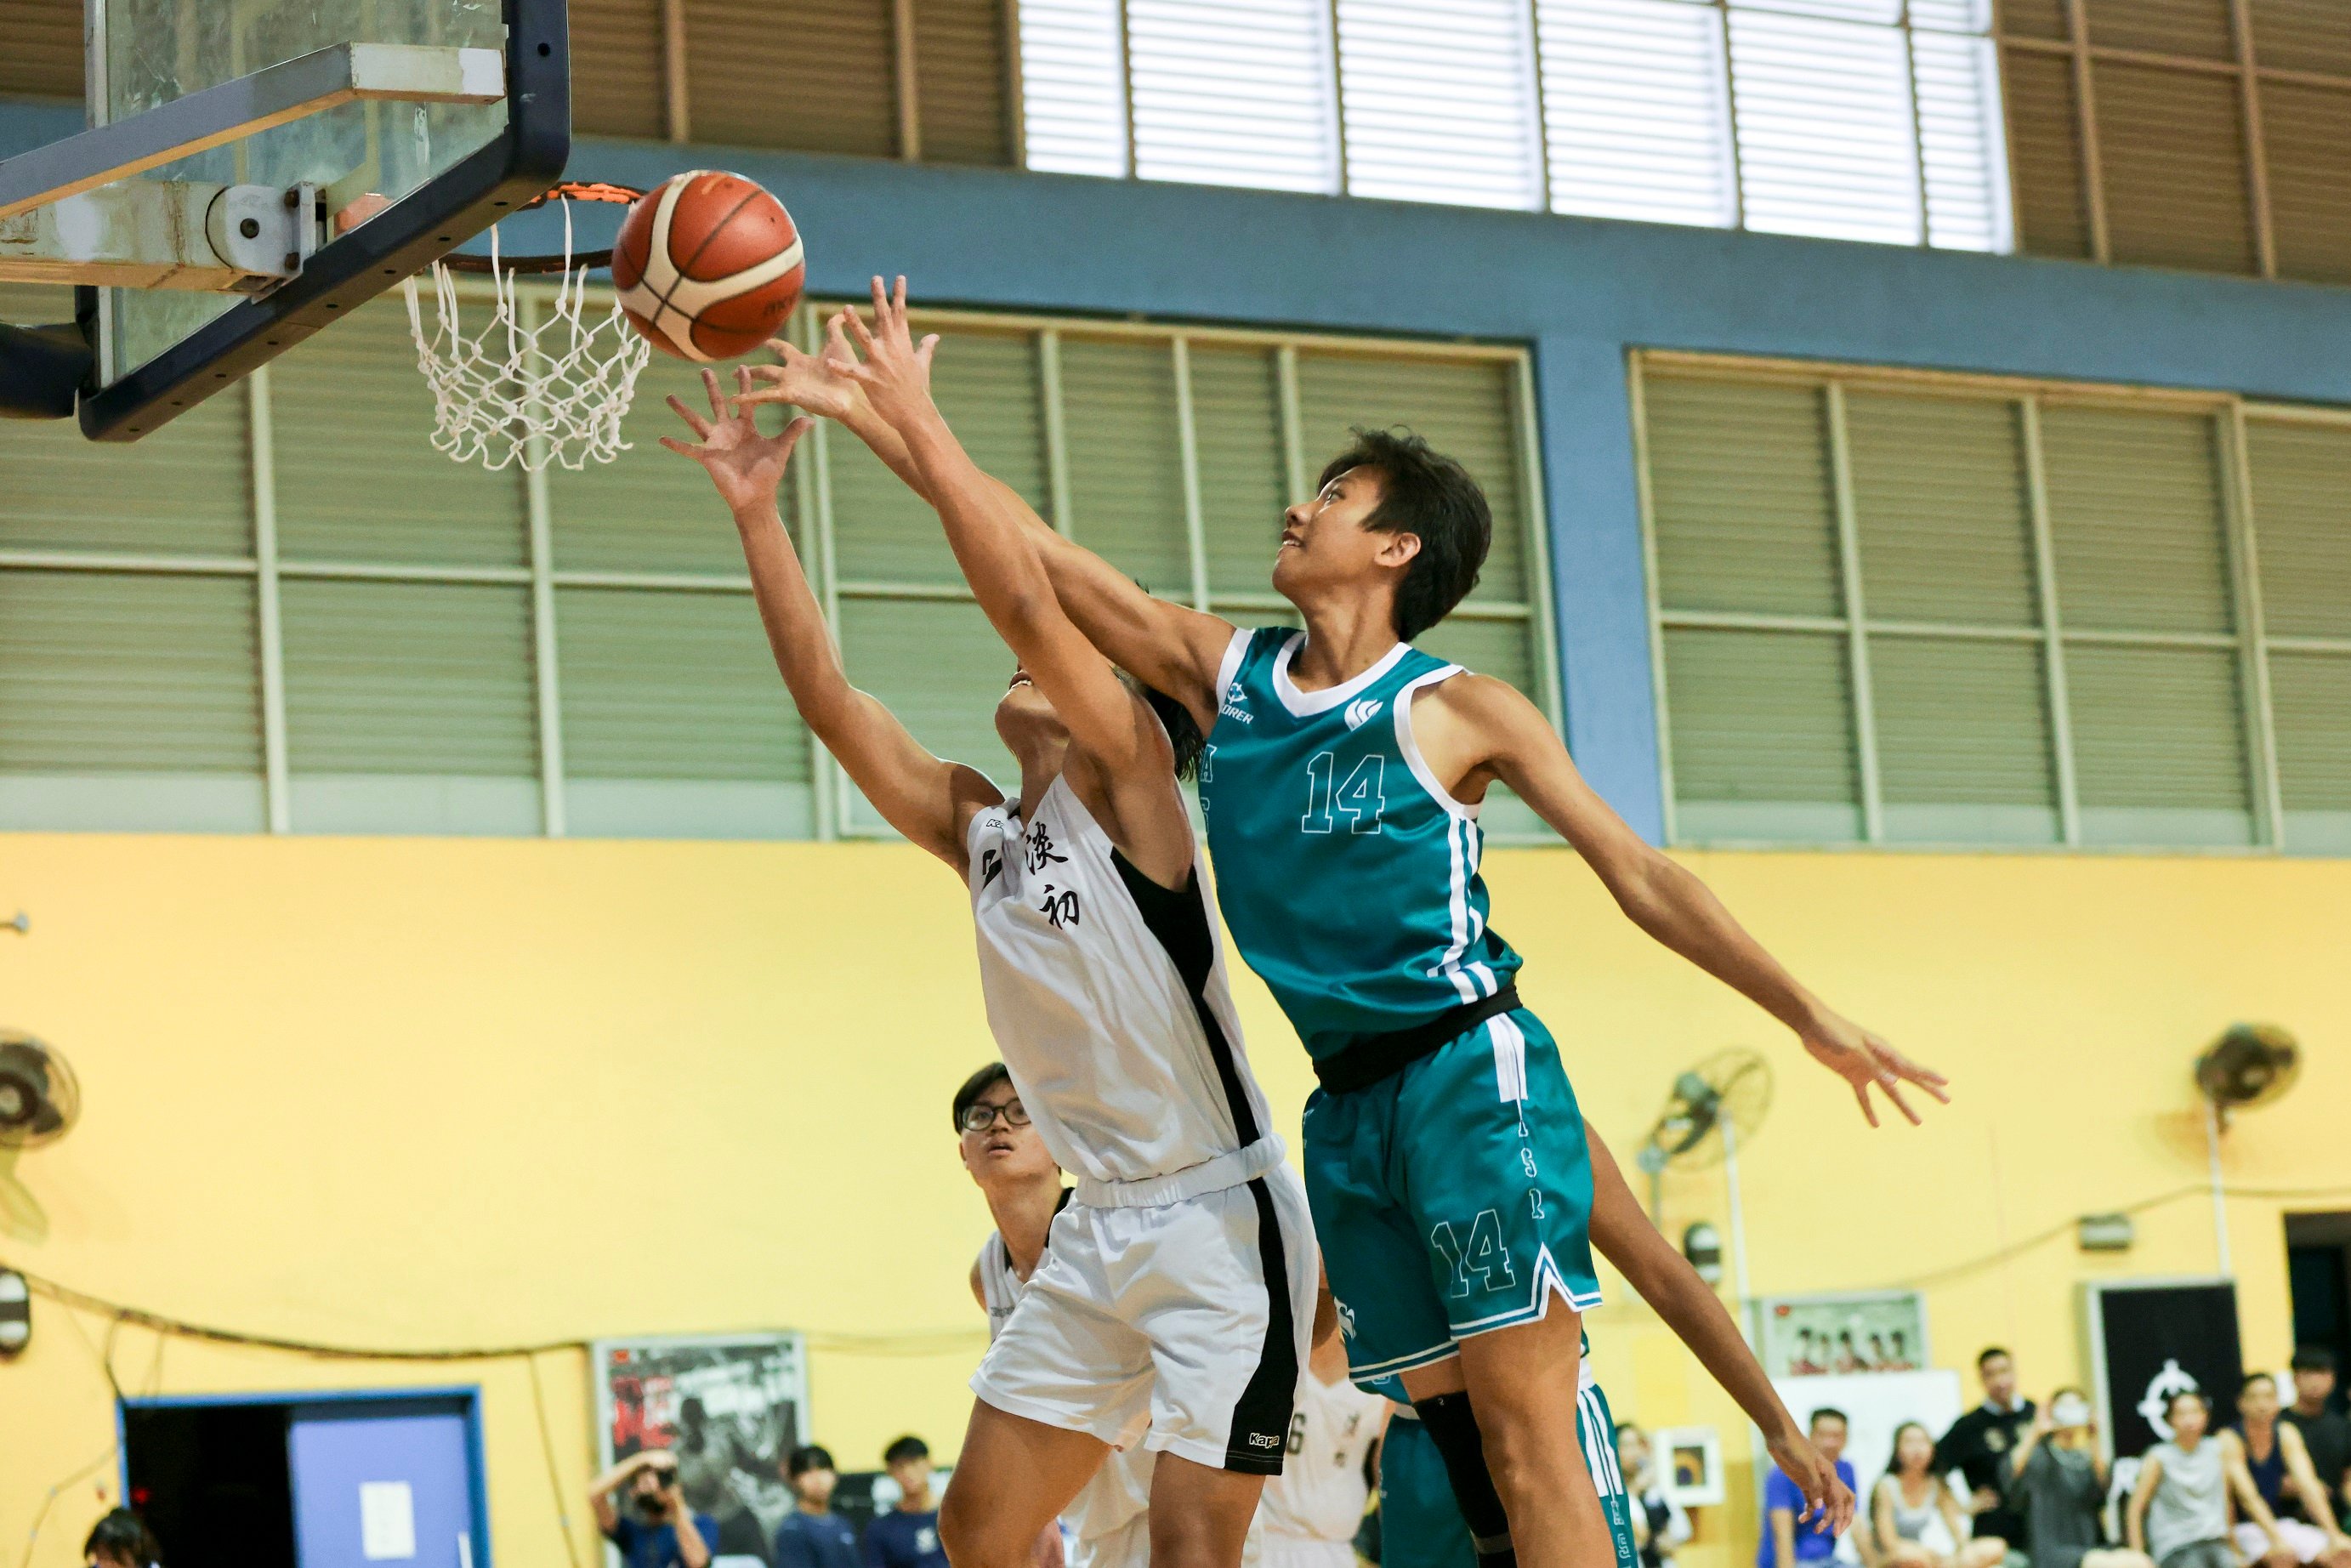 NSG 2023 Basketball : Highlights of A Division clash between Temasek JC & Anderson Serangoon JC